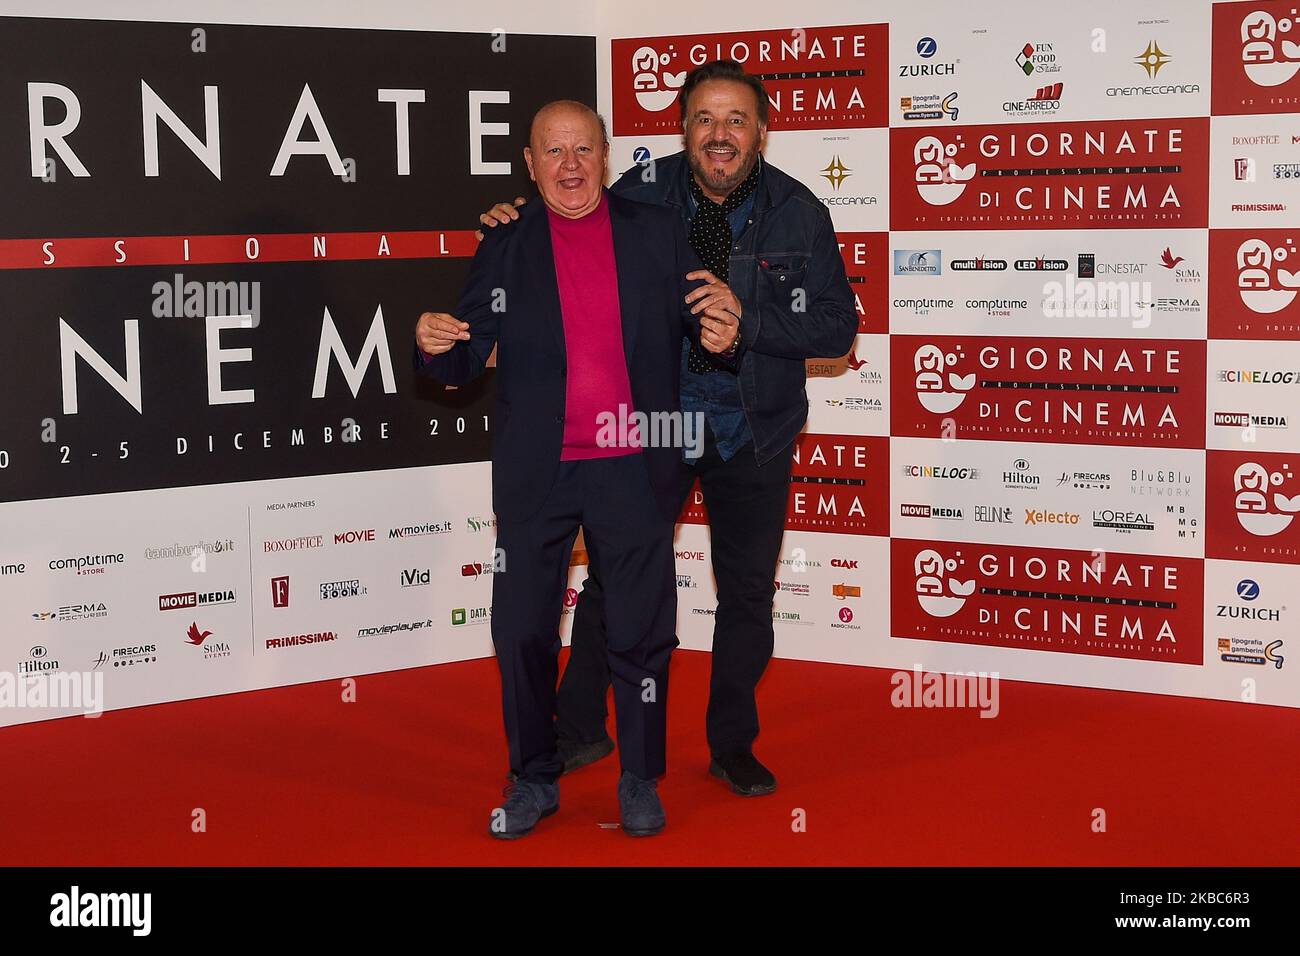 Massimo Boldi y Christian De Sica asisten a una fotollamada durante el 41th Giornate Professionali del Cinema Sorrento Italia el 2 de diciembre de 2019. (Foto de Franco Romano/NurPhoto) Foto de stock